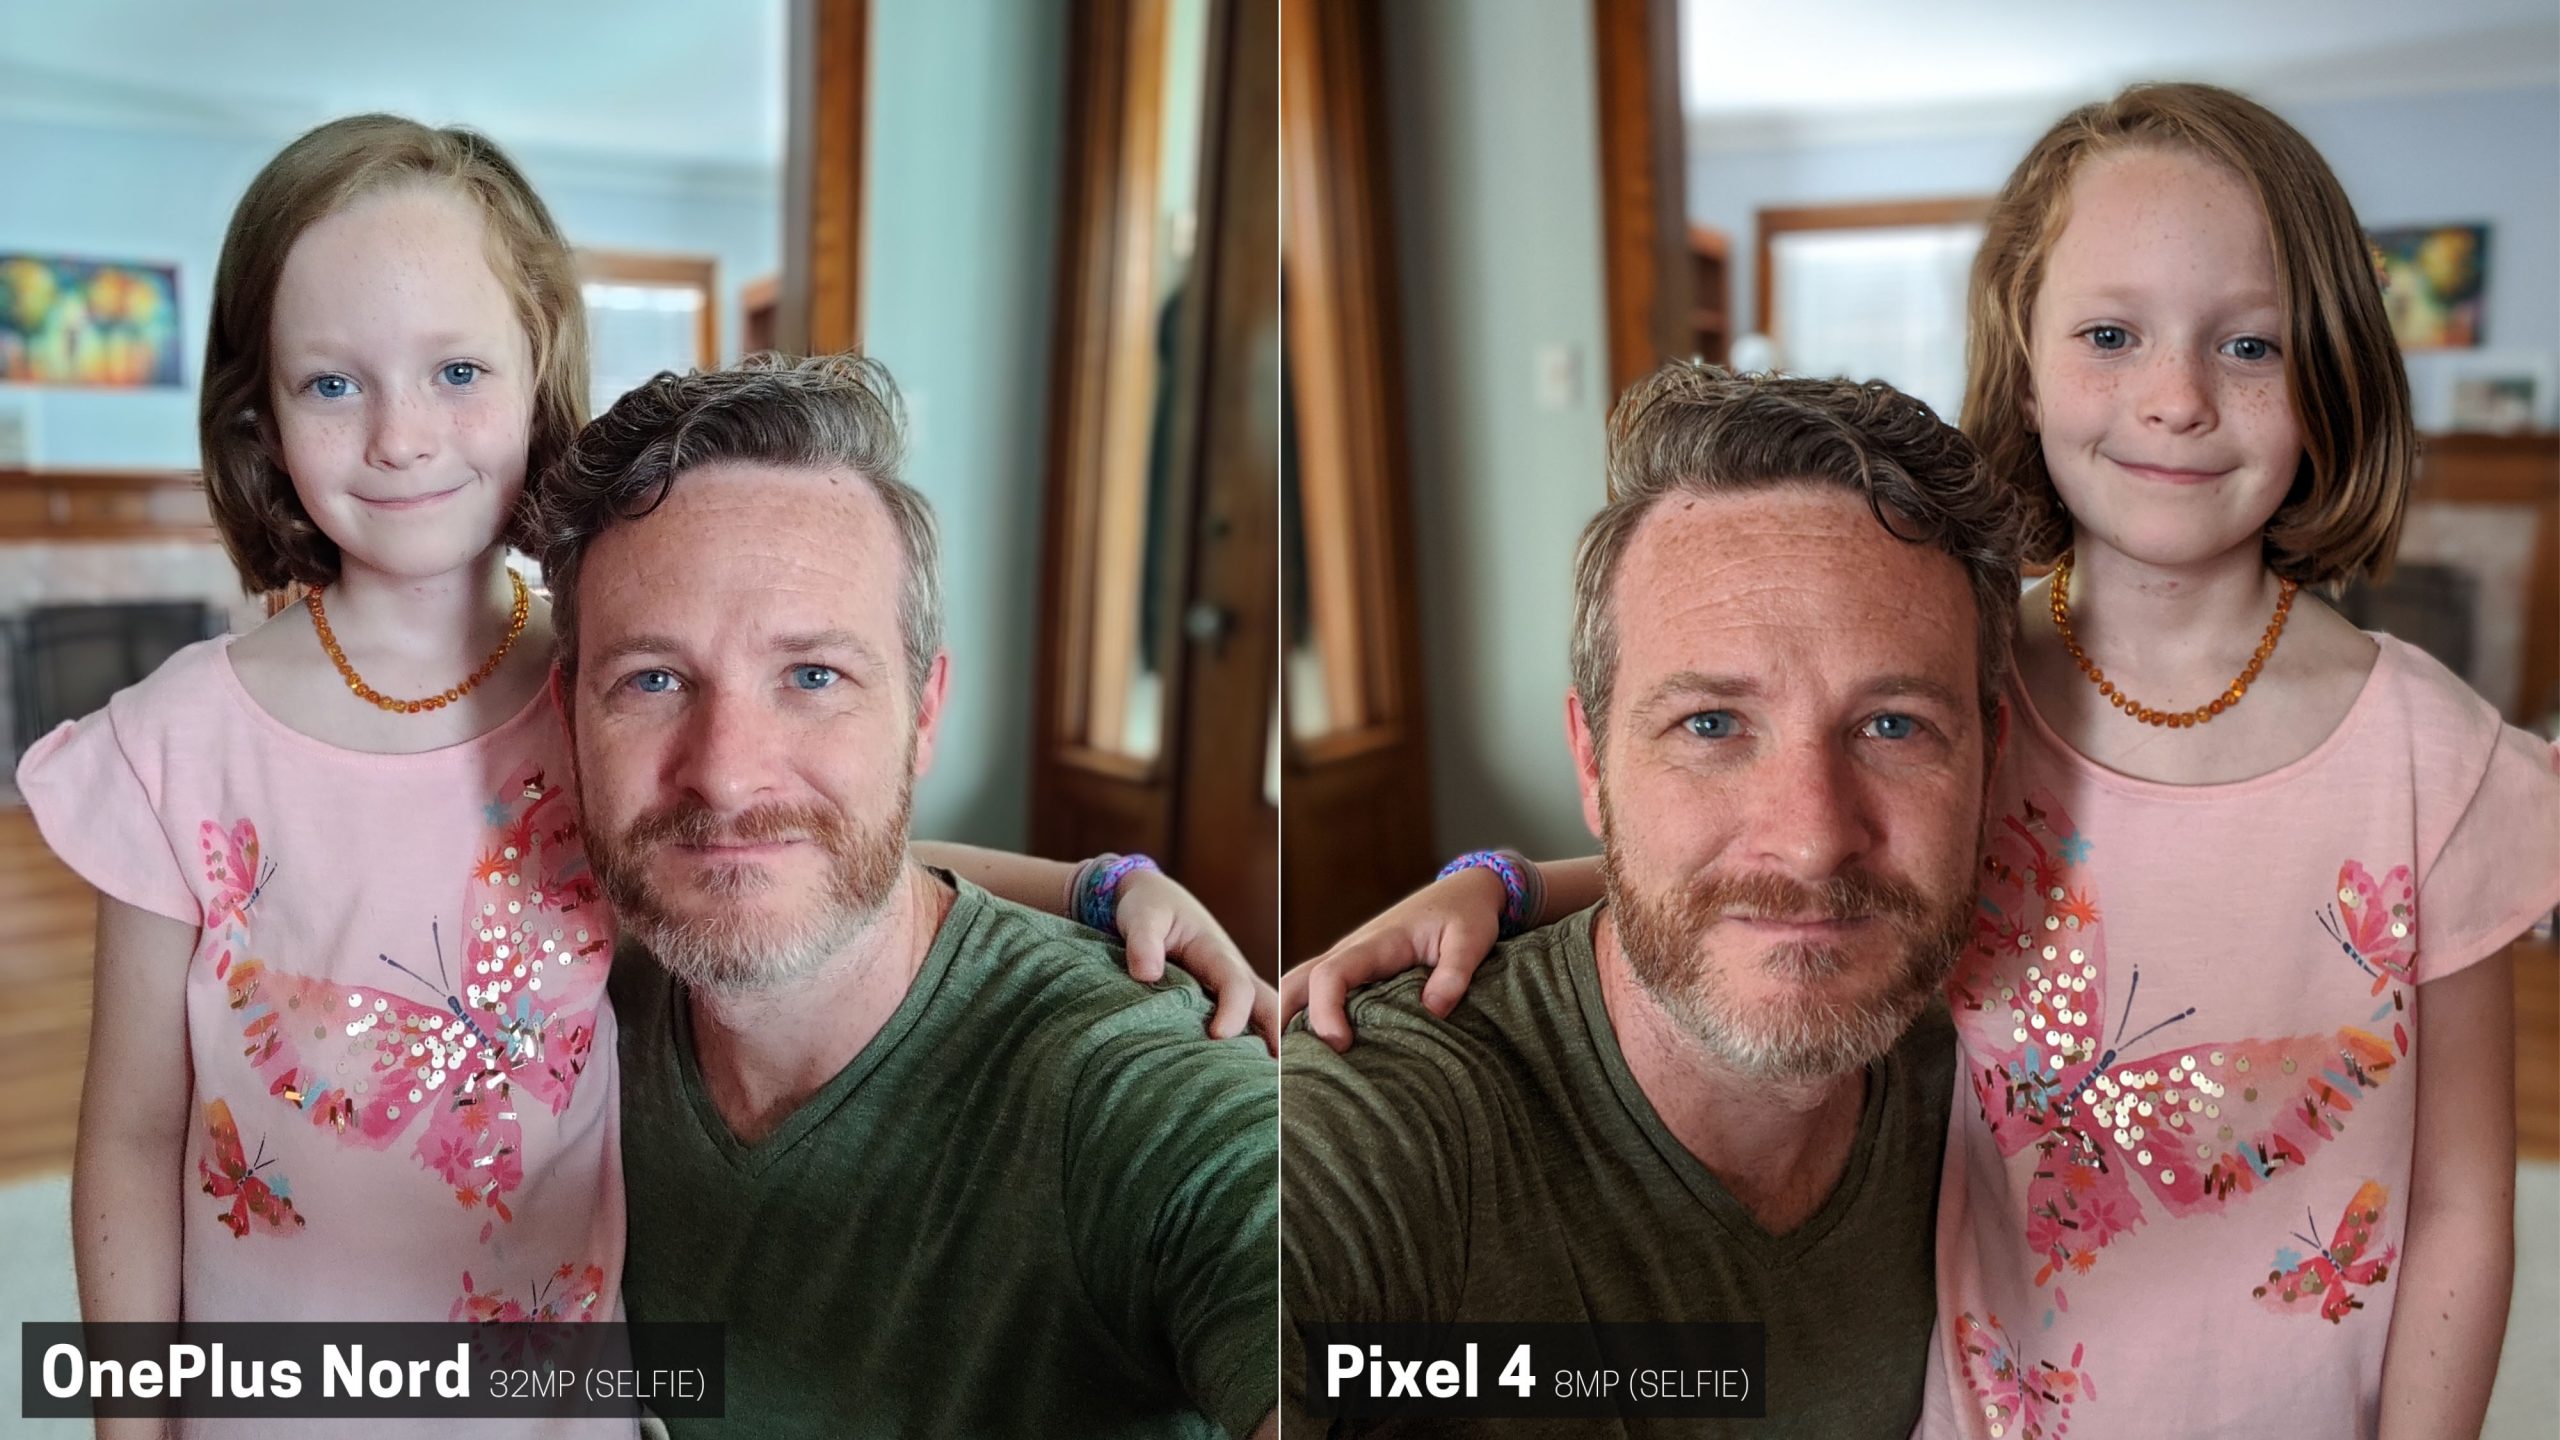 Pixel 4 melenyapkan OnePlus Nord dalam perbandingan kamera 74